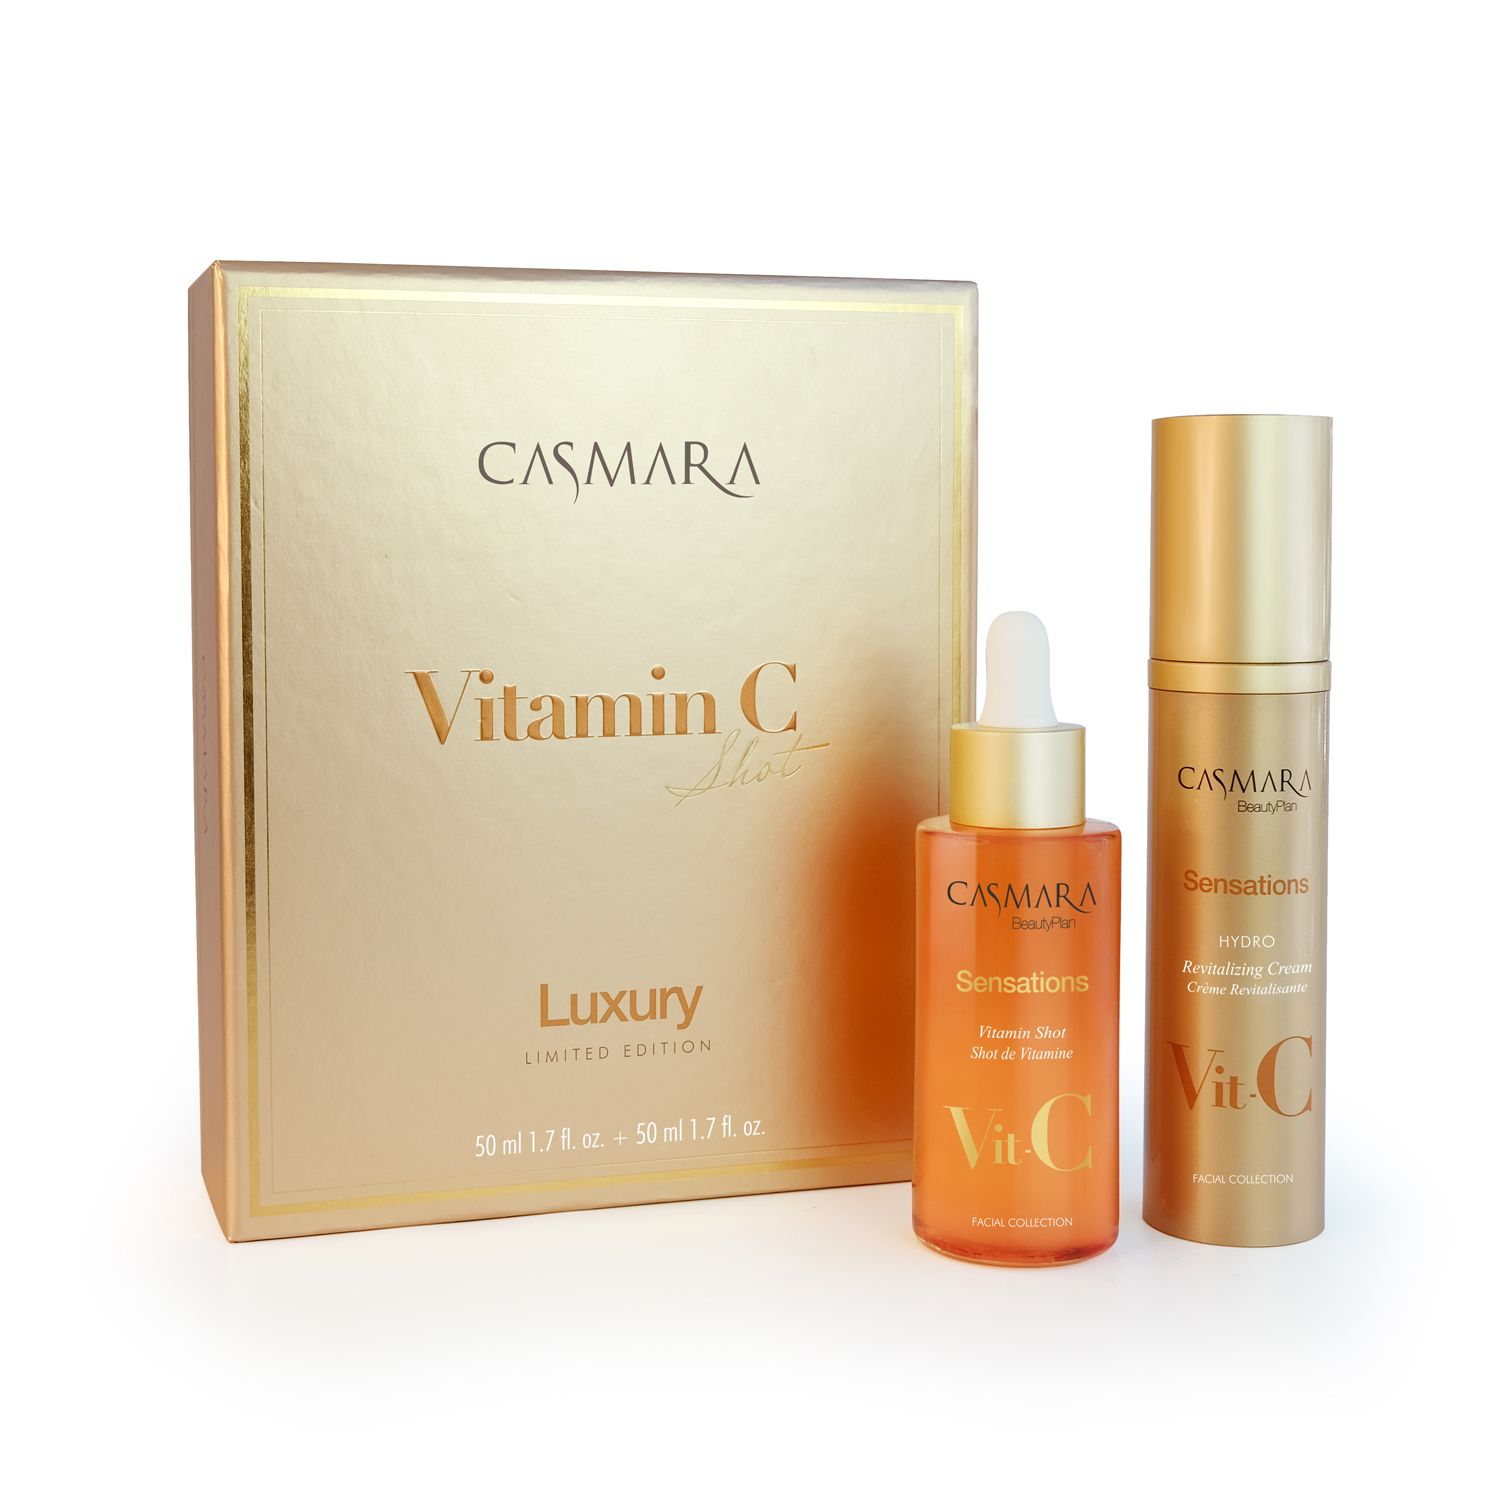 Casmara Vitamin C Shot Limited Edition Box – vitamino C rinkinys: serumas su vitaminais 50ml + hidro-gaivinamasis kremas 50ml